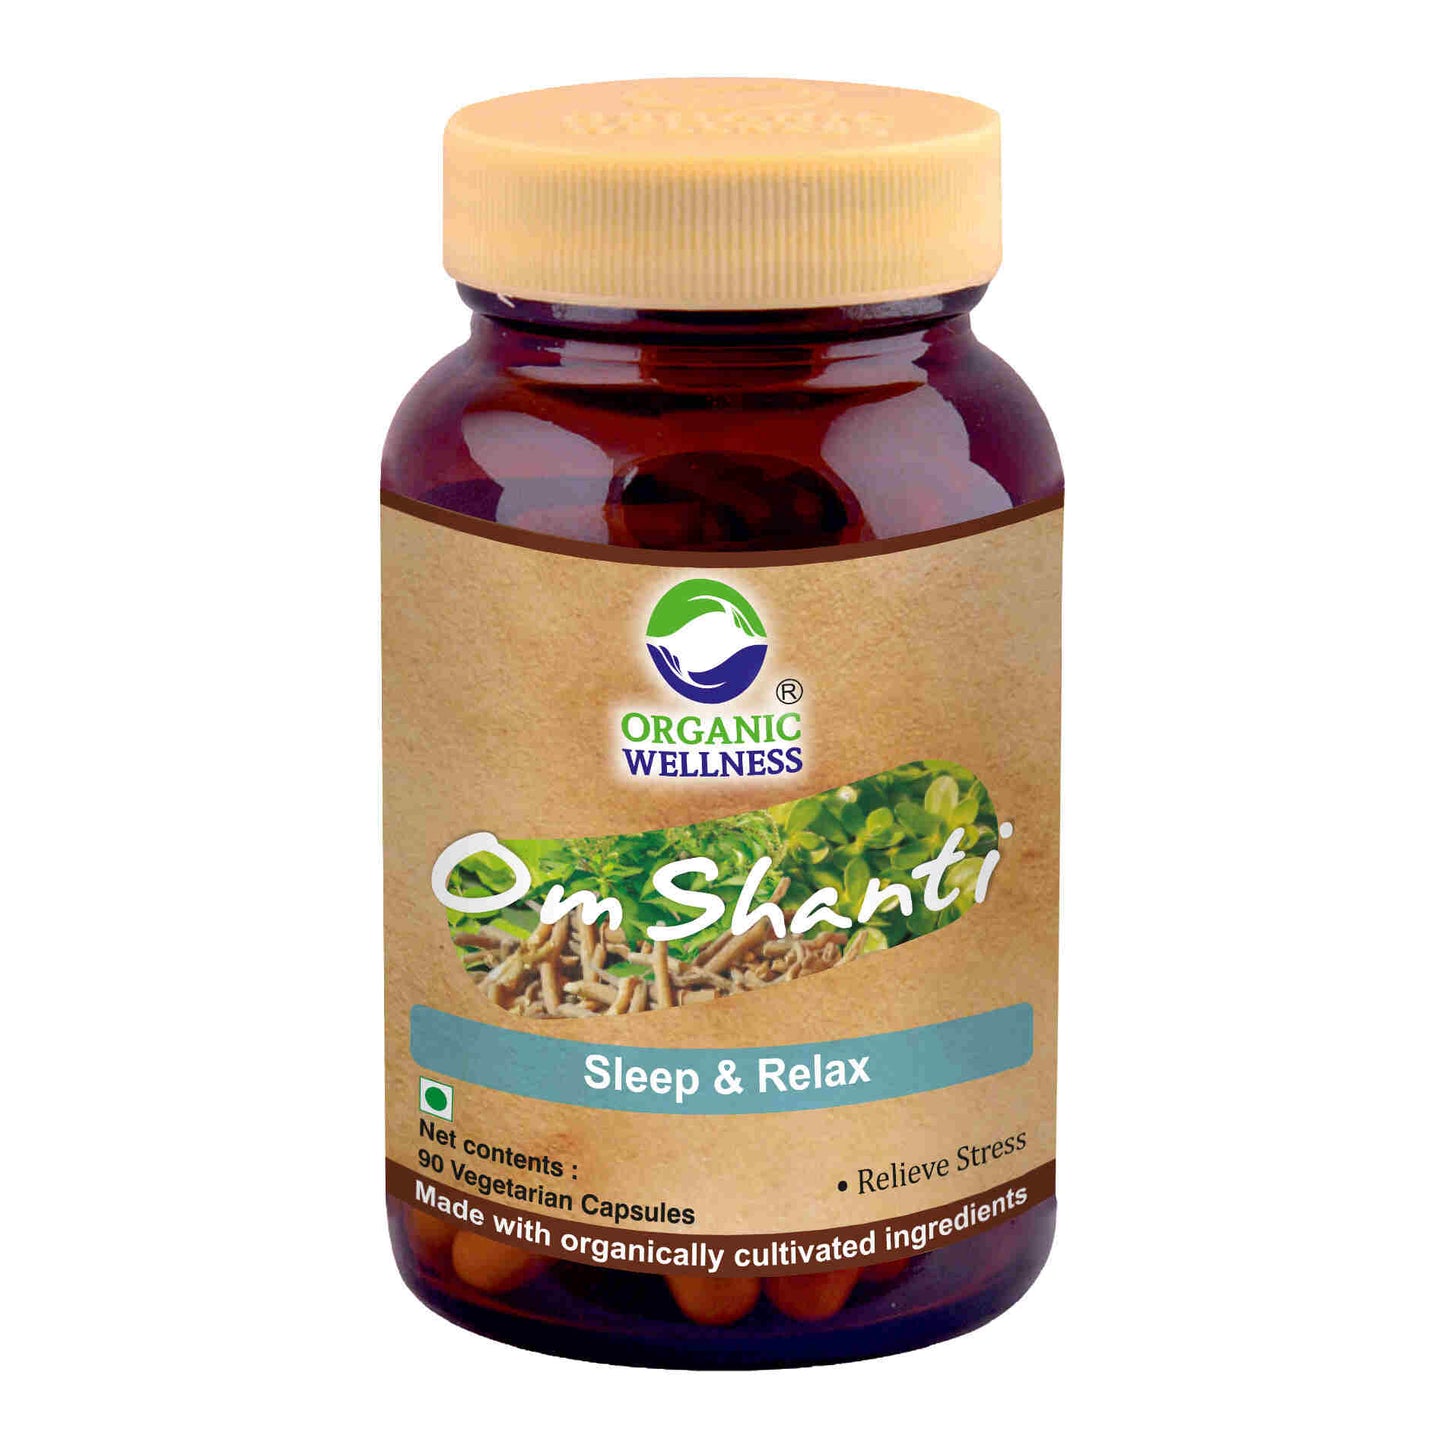 Organic Wellness Om-Shanti